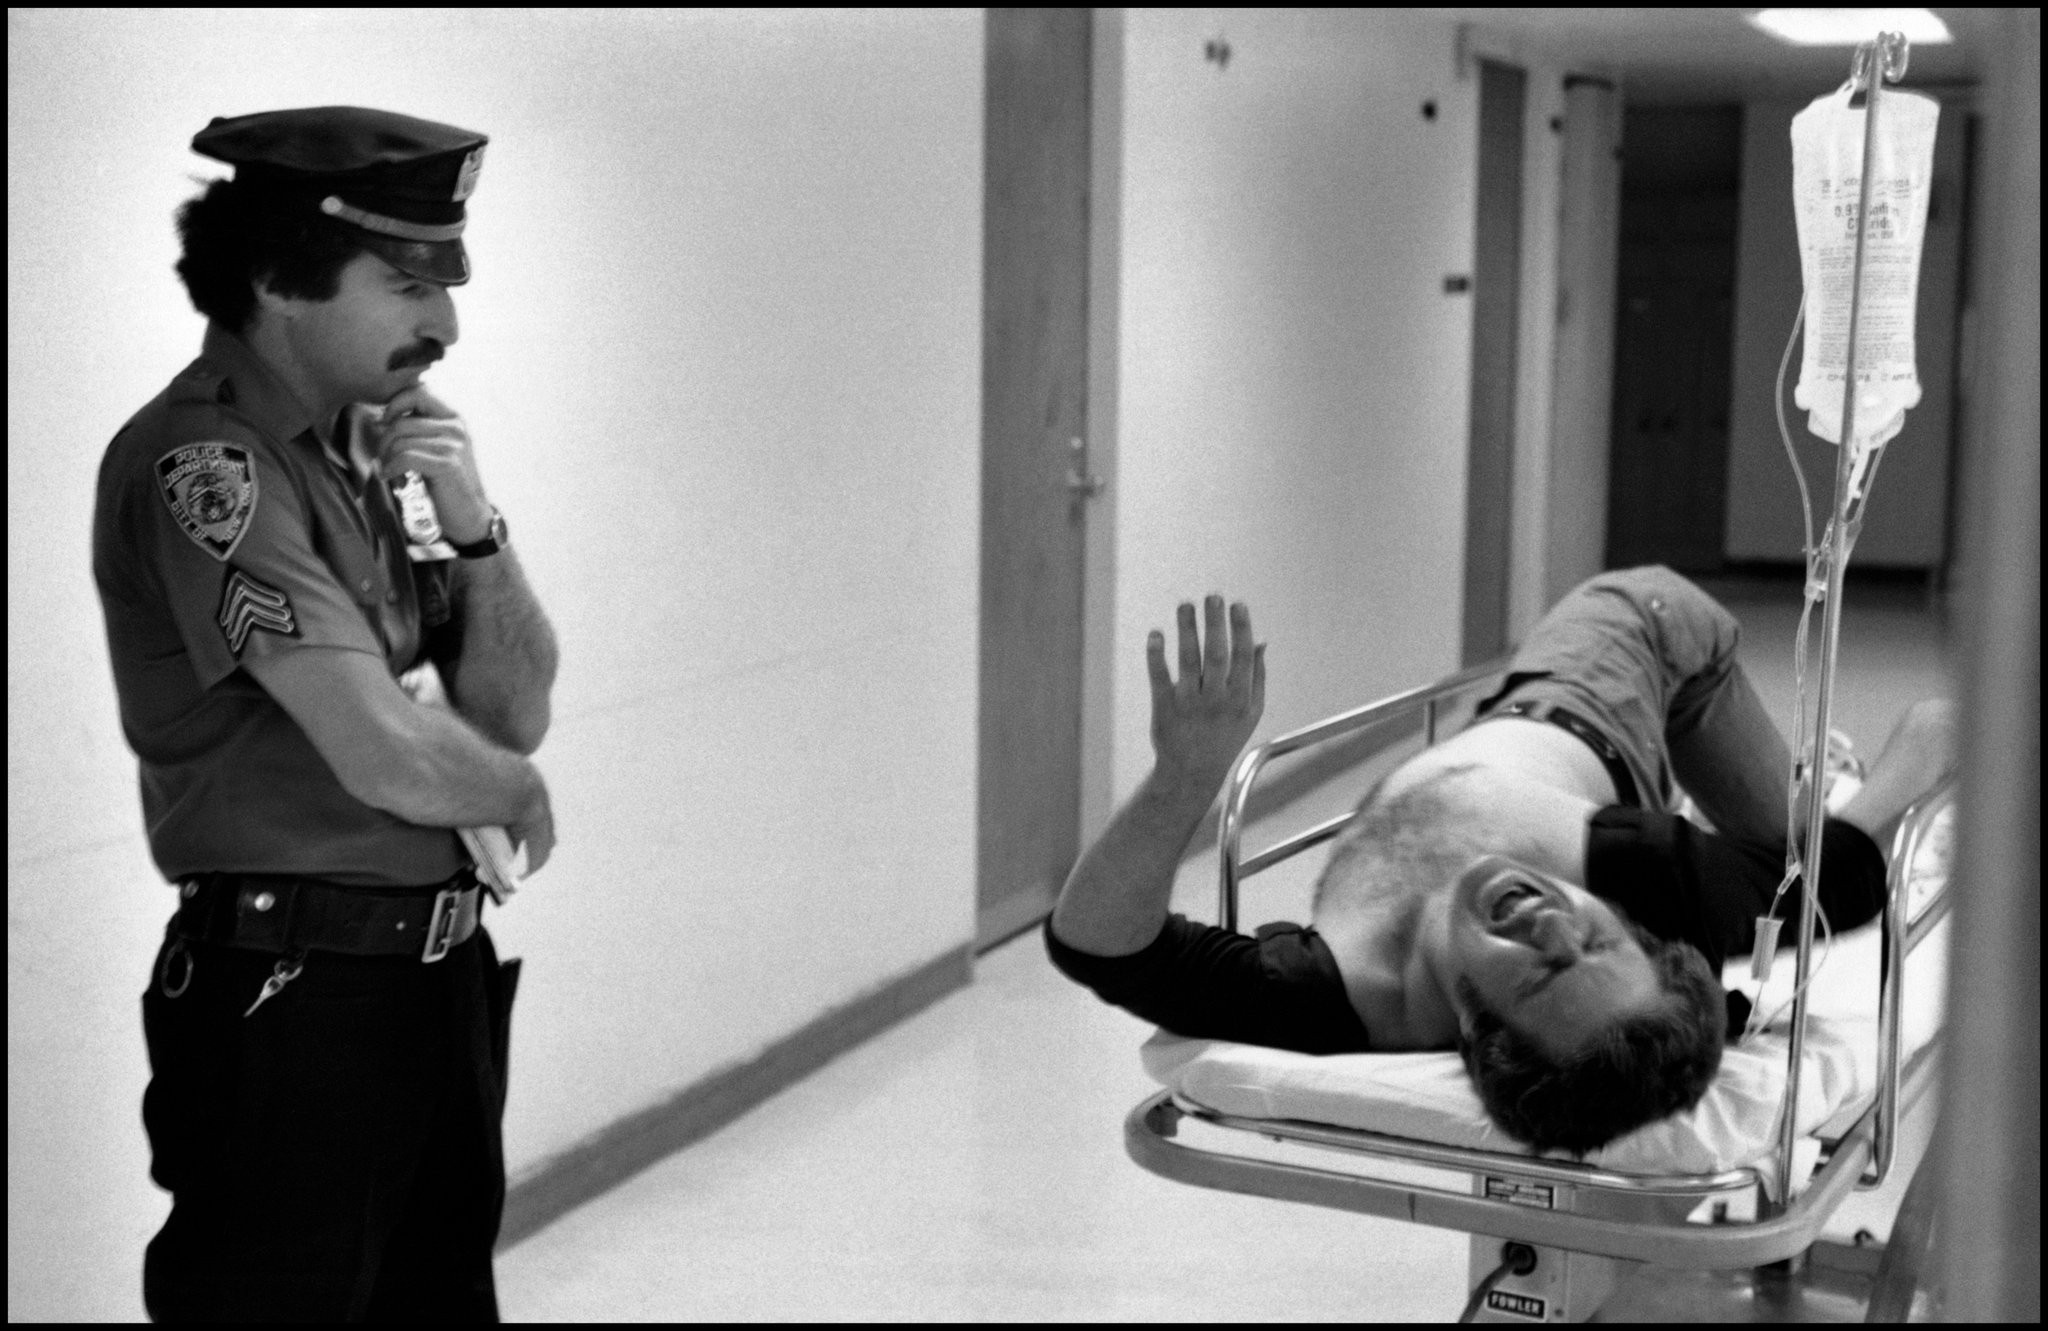 Полицейский терпеливо ждет в отделении неотложной помощи больницы, пока жертва с ранением в ногу расскажет, что произошло, Нью-Йорк, 1978. Фотограф Леонард Фрид